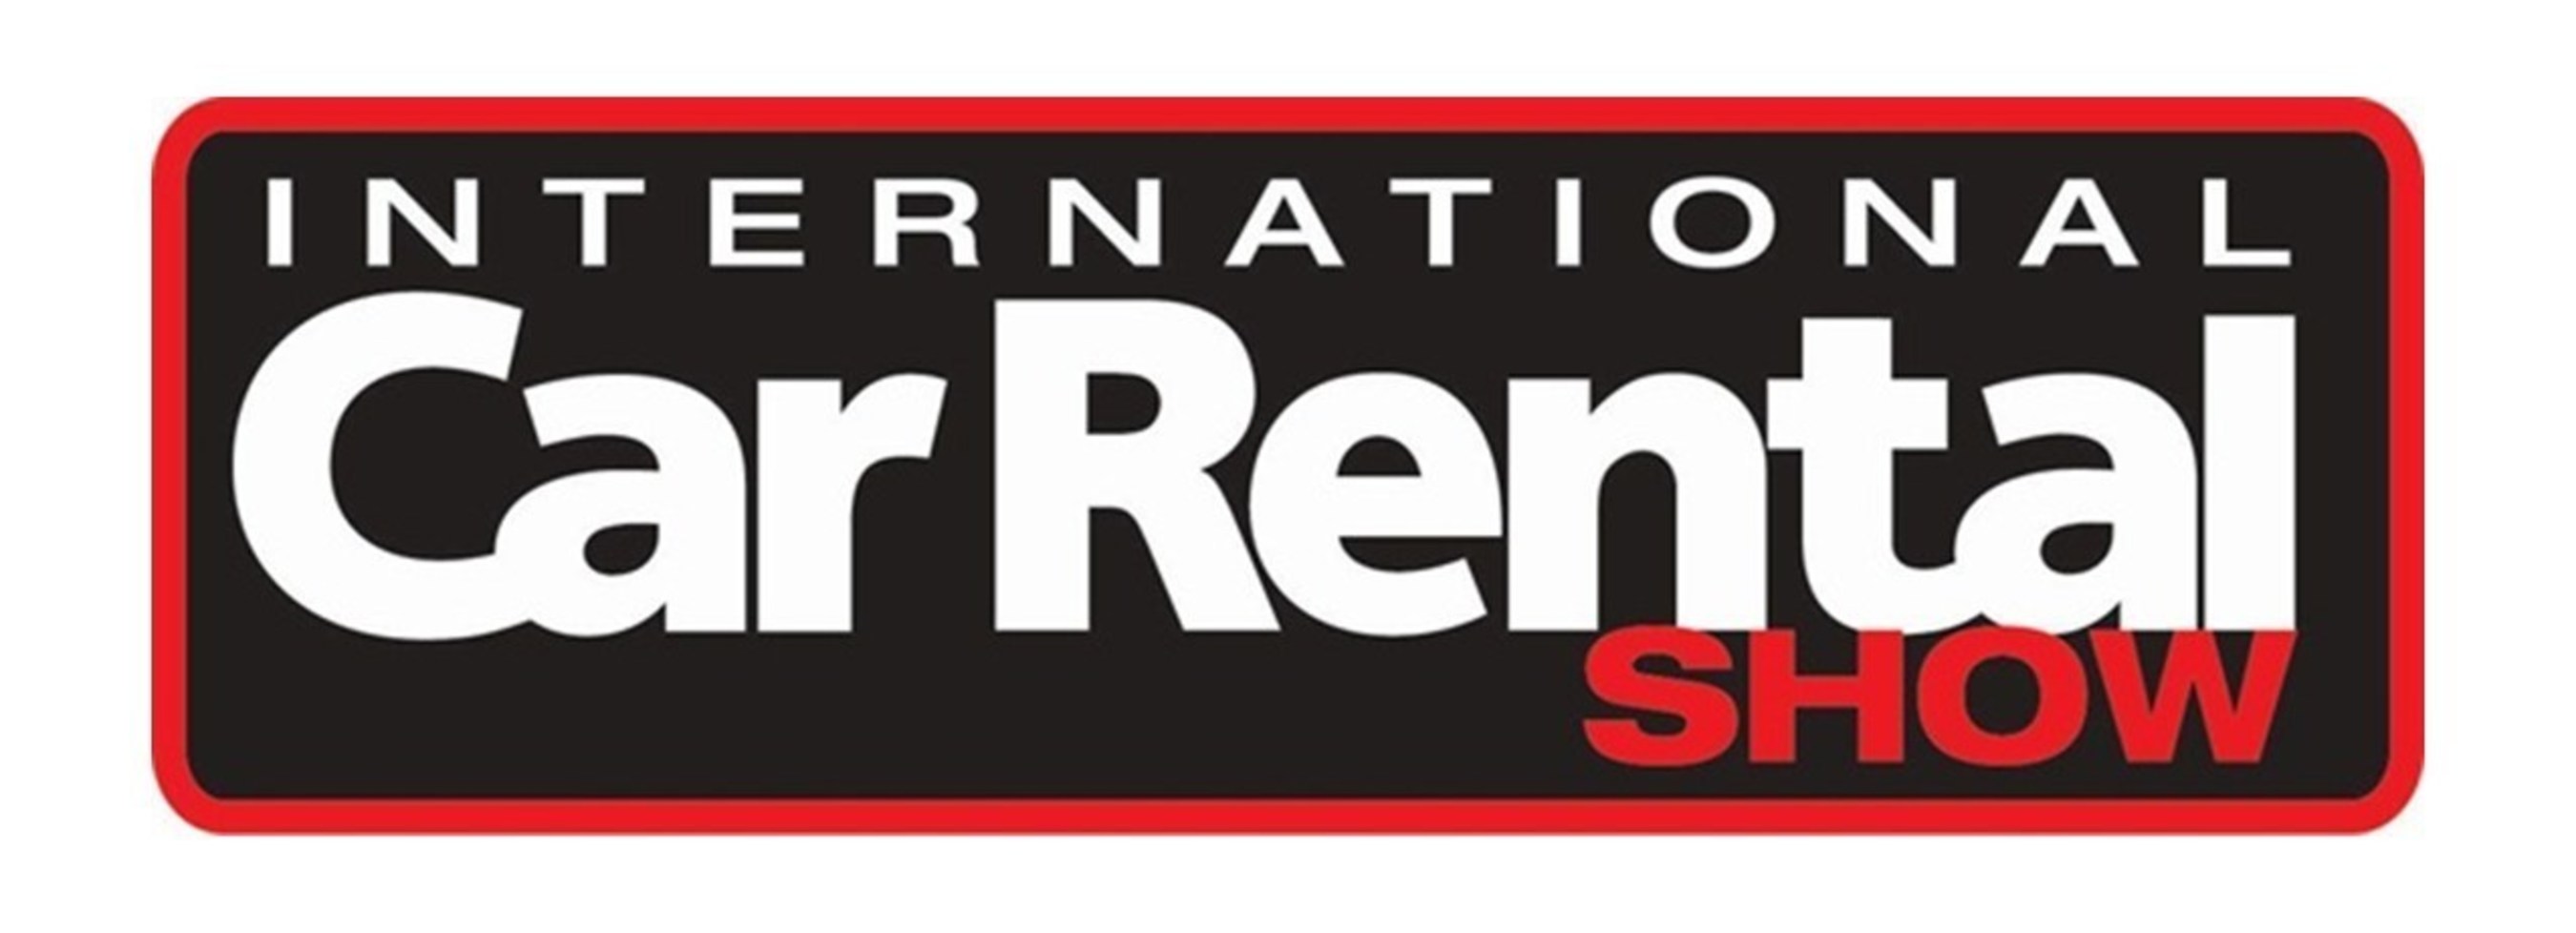 International Car Rental Show (http://www.carrentalshow.com/)